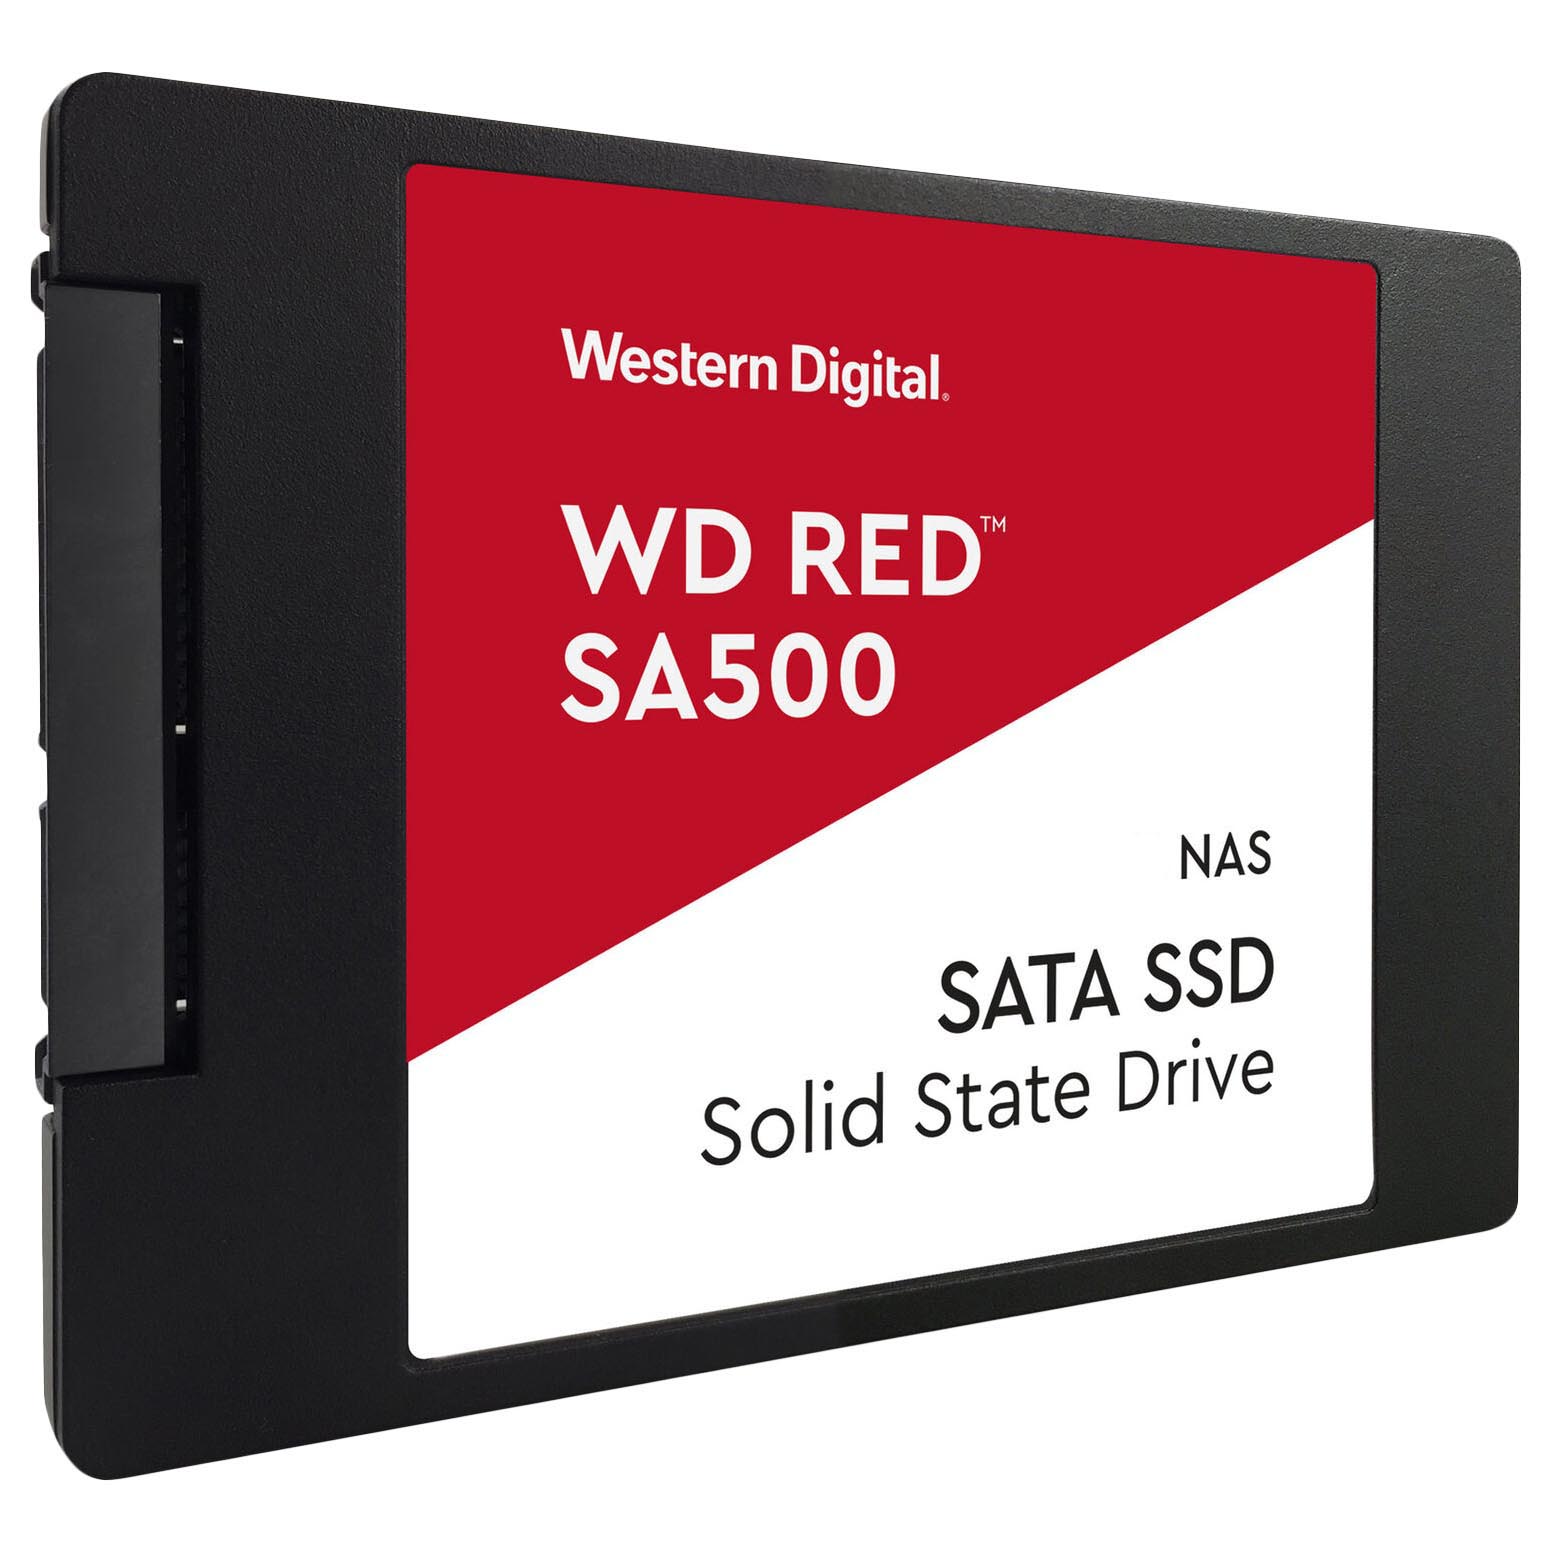 Внутренний твердотельный накопитель Western Digital WD Red SA500 NAS, WDS100T1R0A, 1Тб, 2,5 твердотельный накопитель western digital wd red 1 тб sata wds100t1r0a